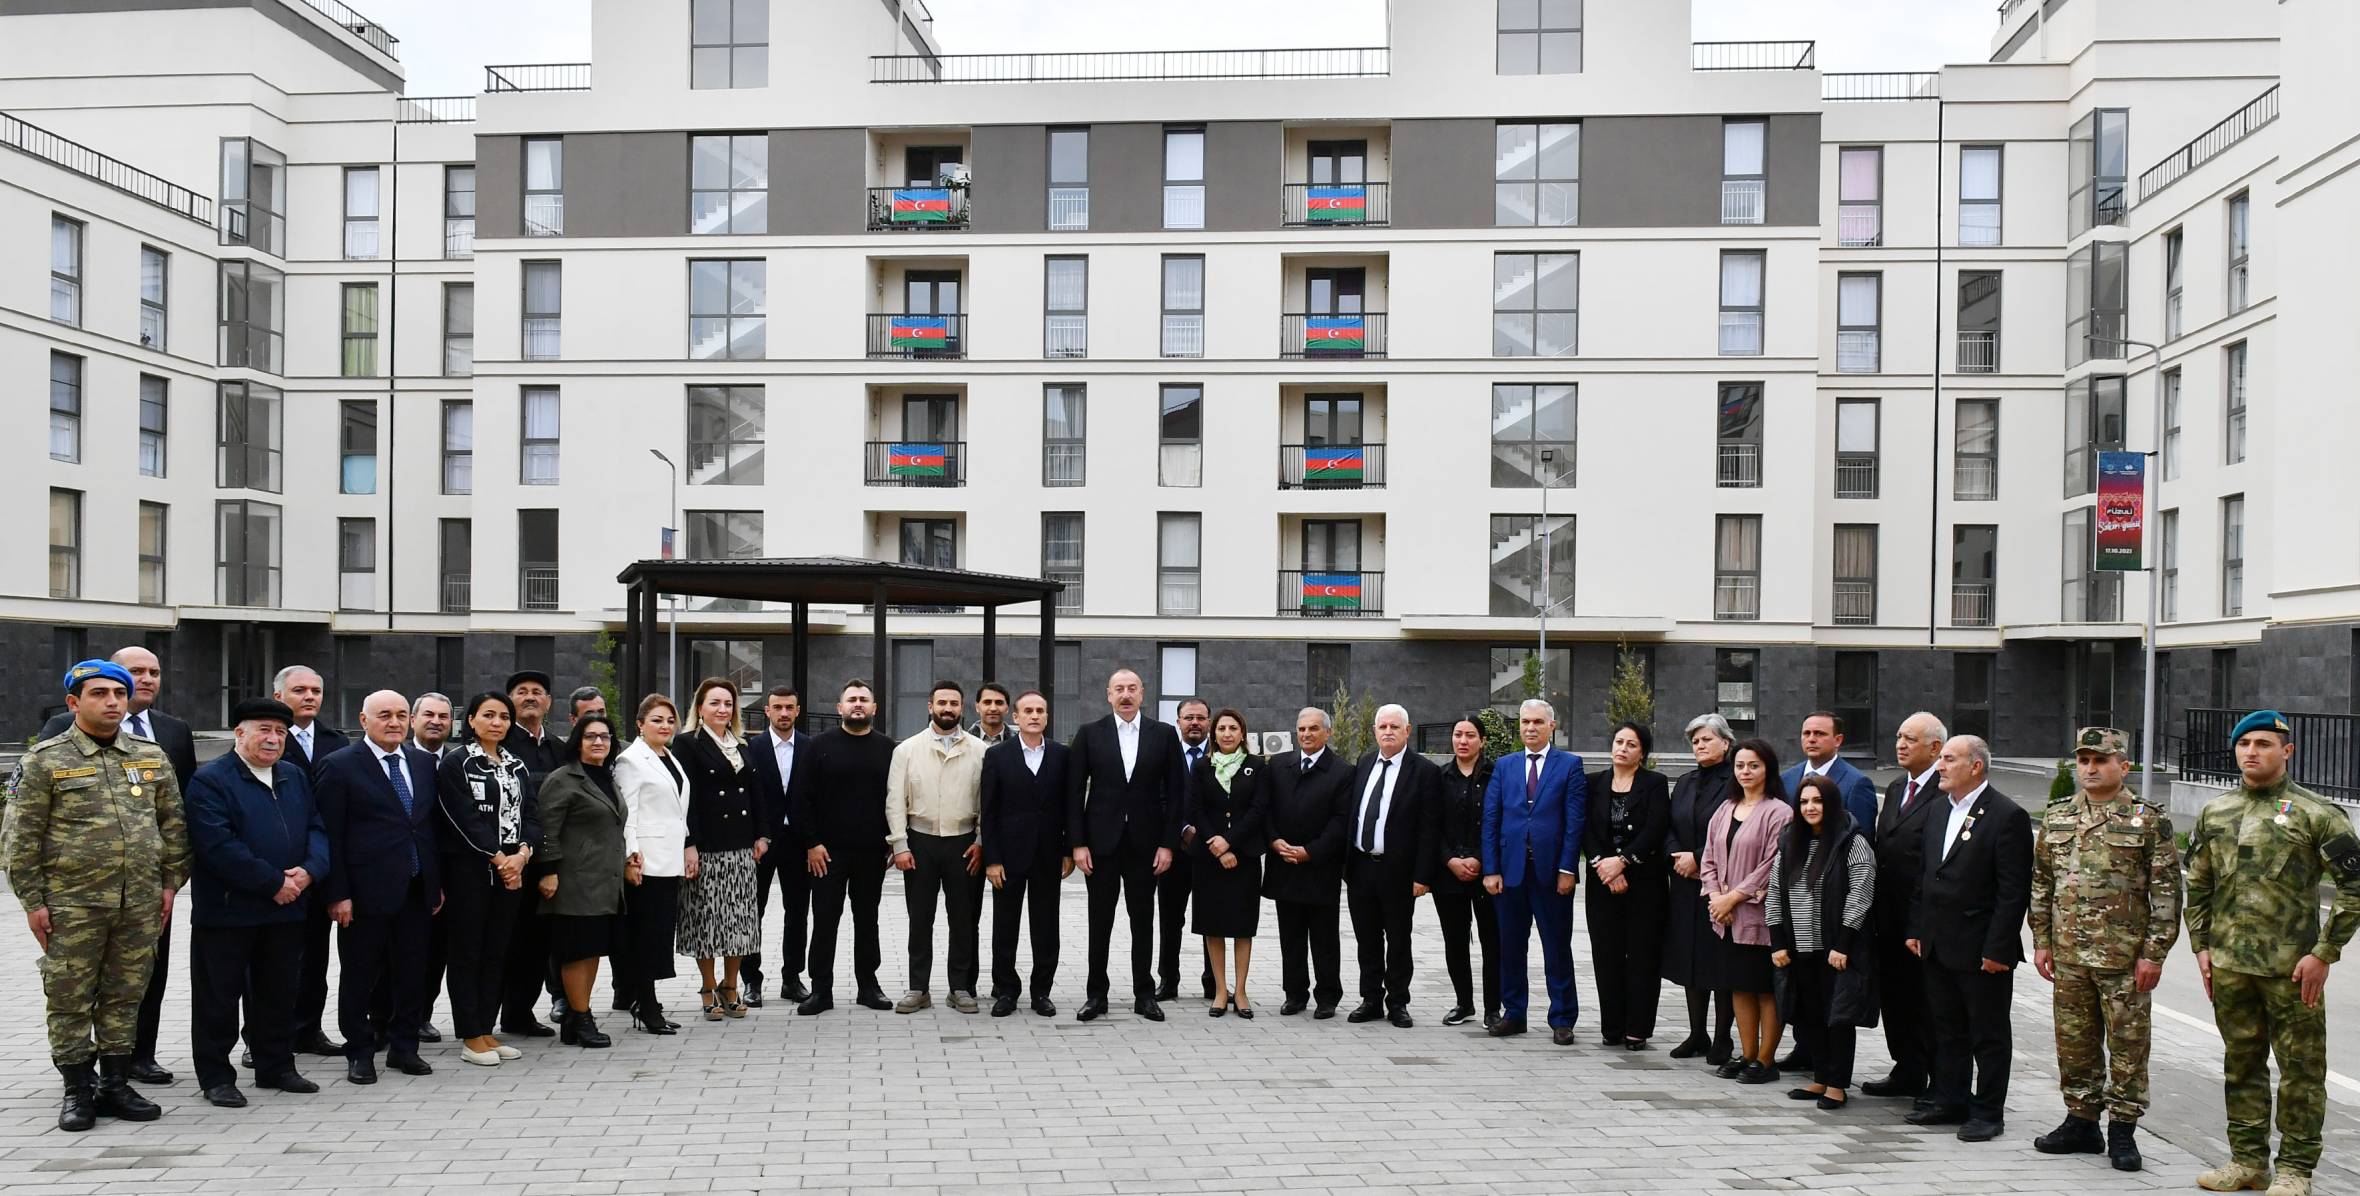 Ильхам Алиев в "День города Физули" встретился с жителями, переселившимися в город Физули, и представителями общественности района